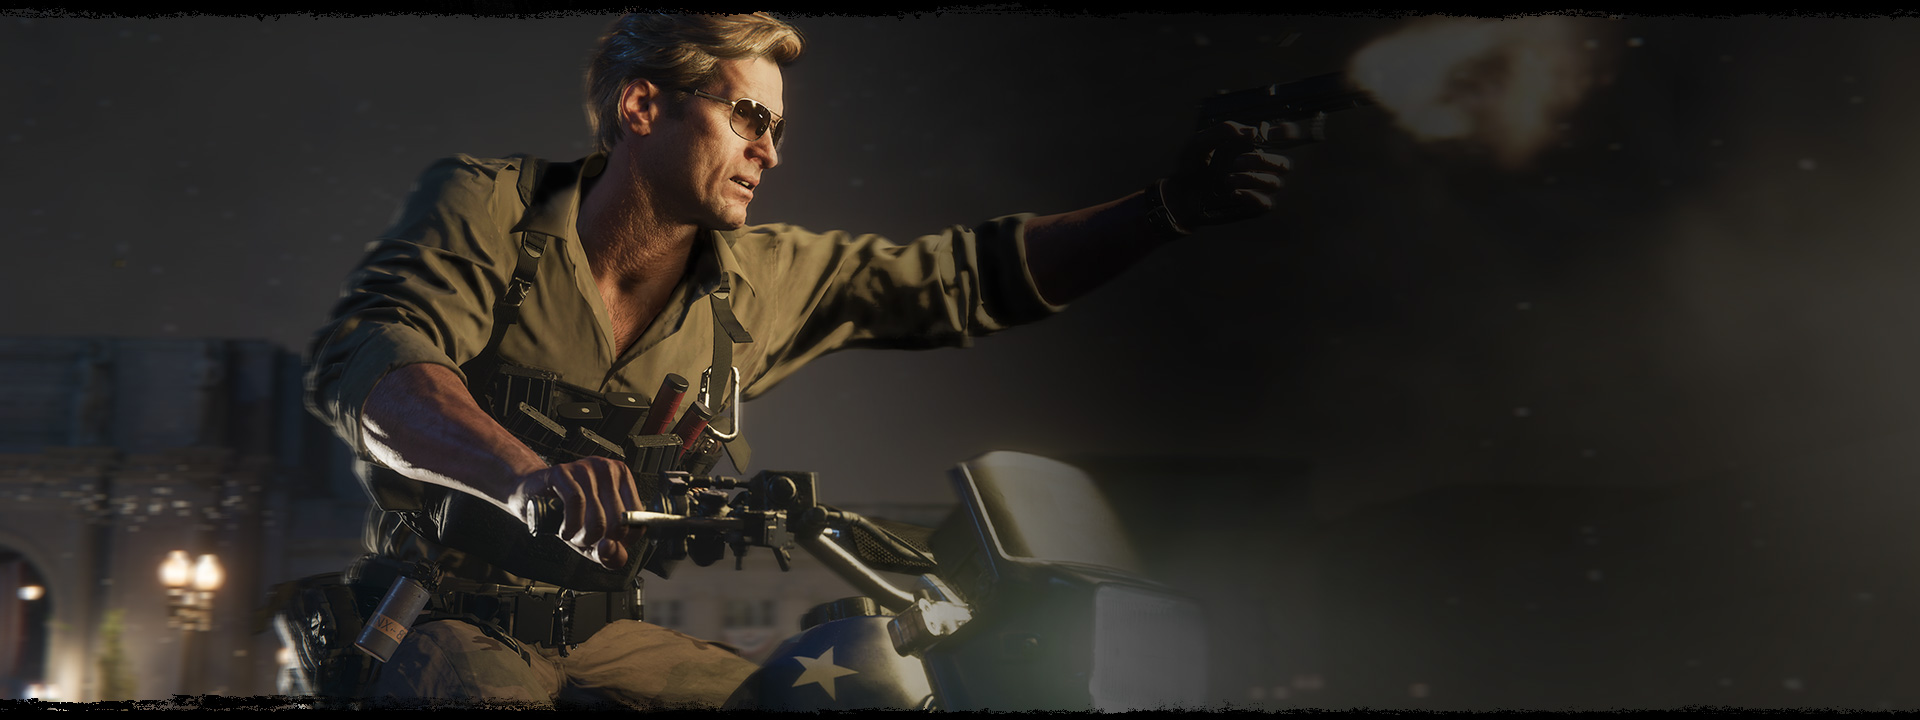 Un personaggio che spara con una pistola mentre guida una moto con disegnata la bandiera americana.